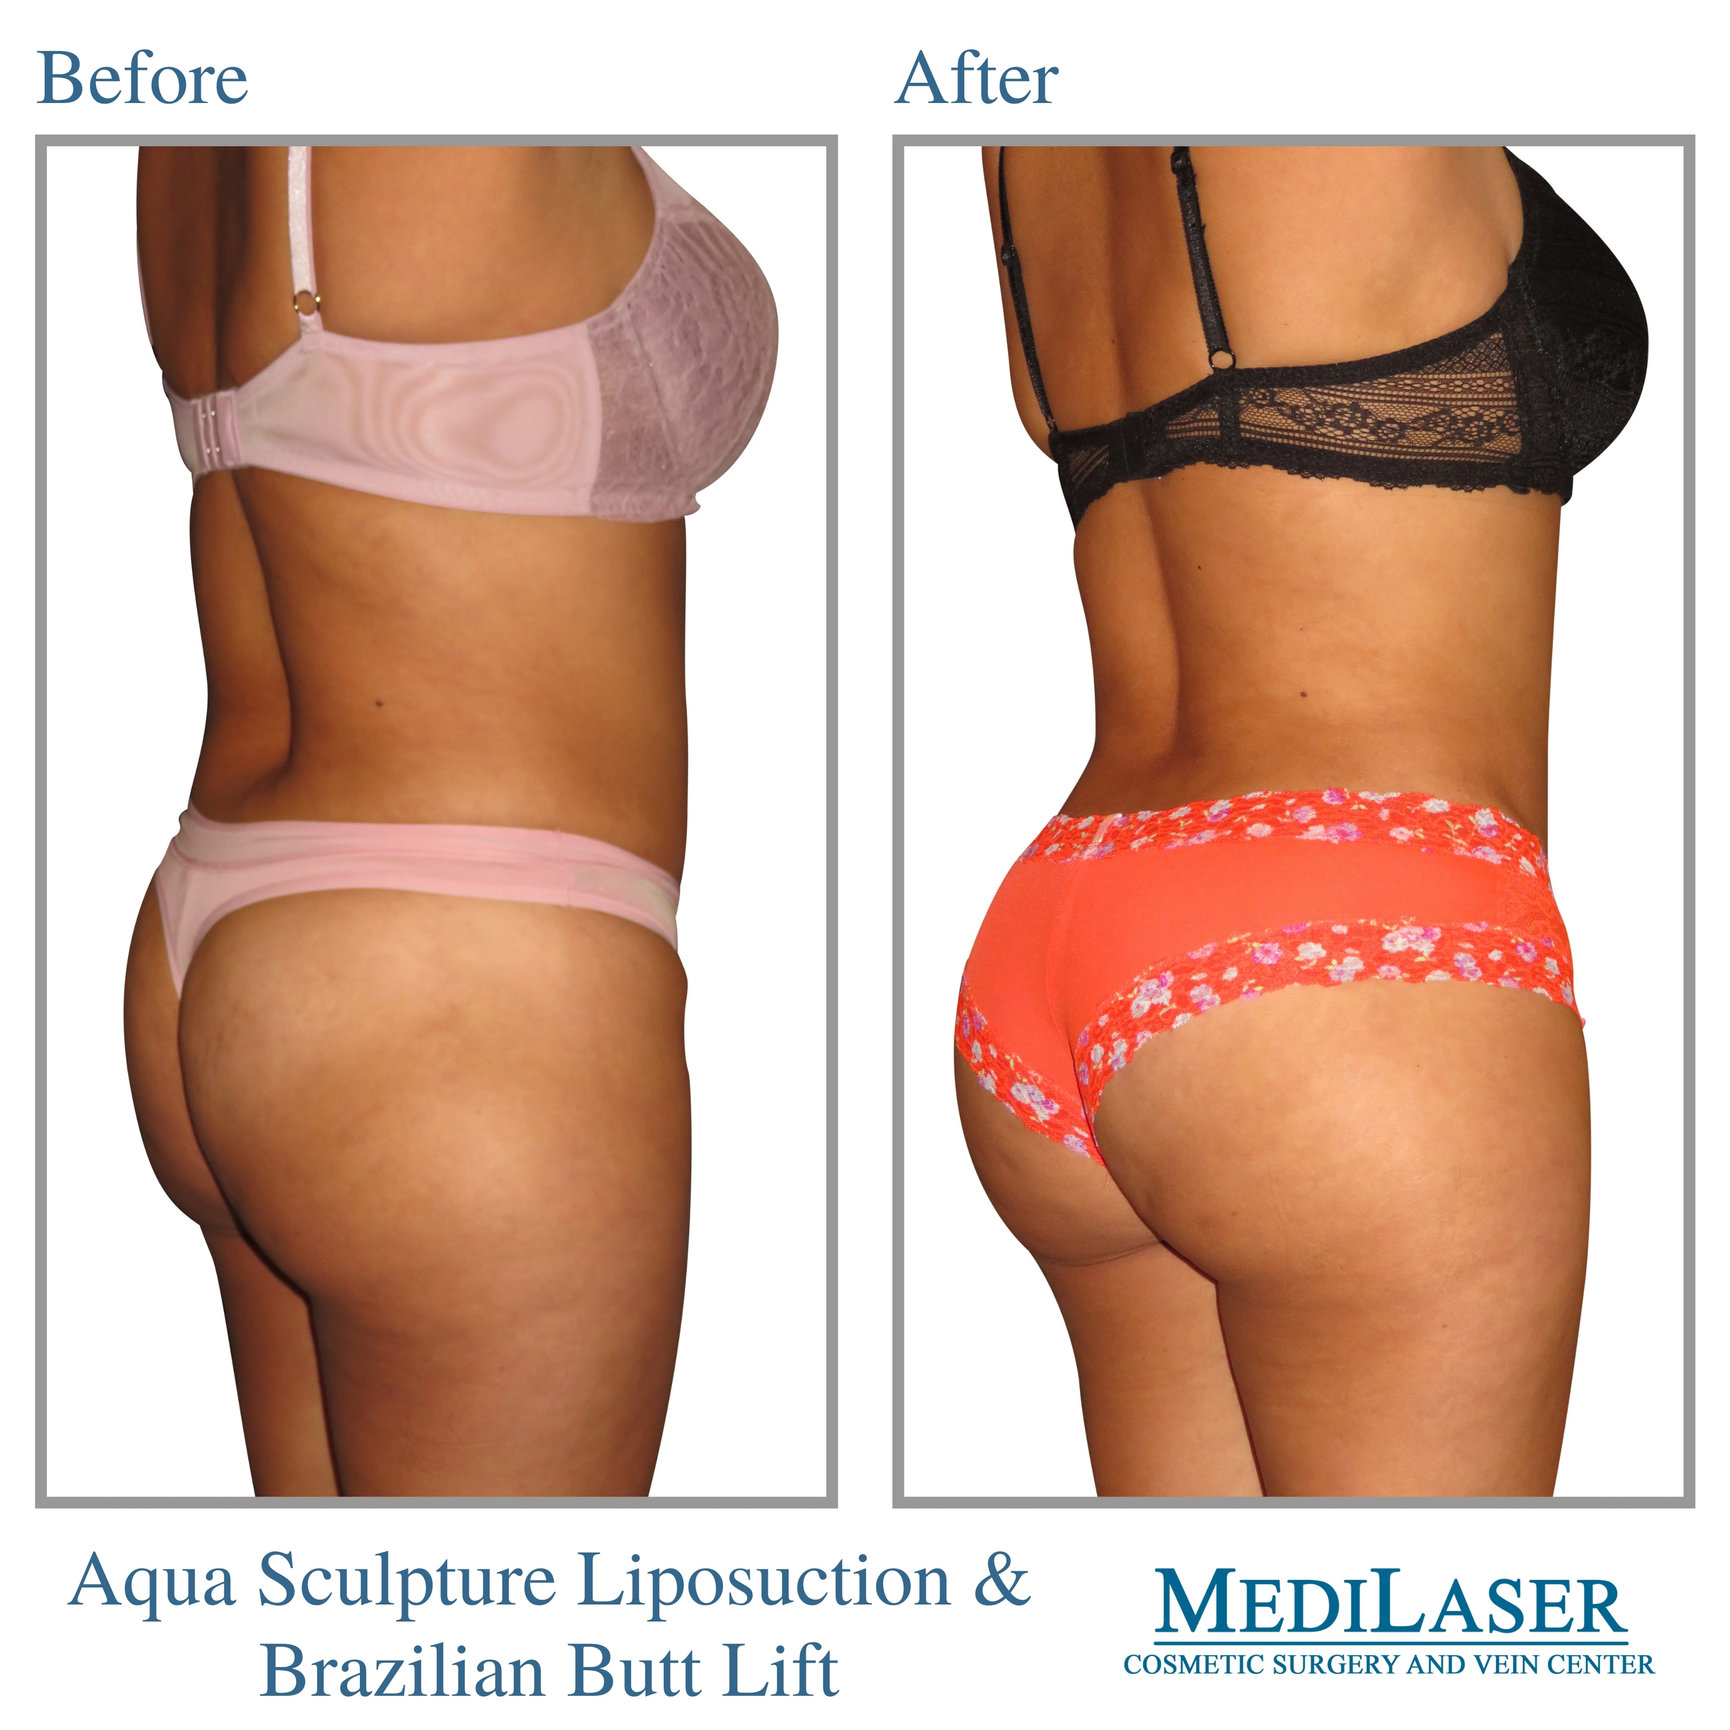 Brazilian-Butt-Lift-Before-After - Medilaser Surgery and Vein Center